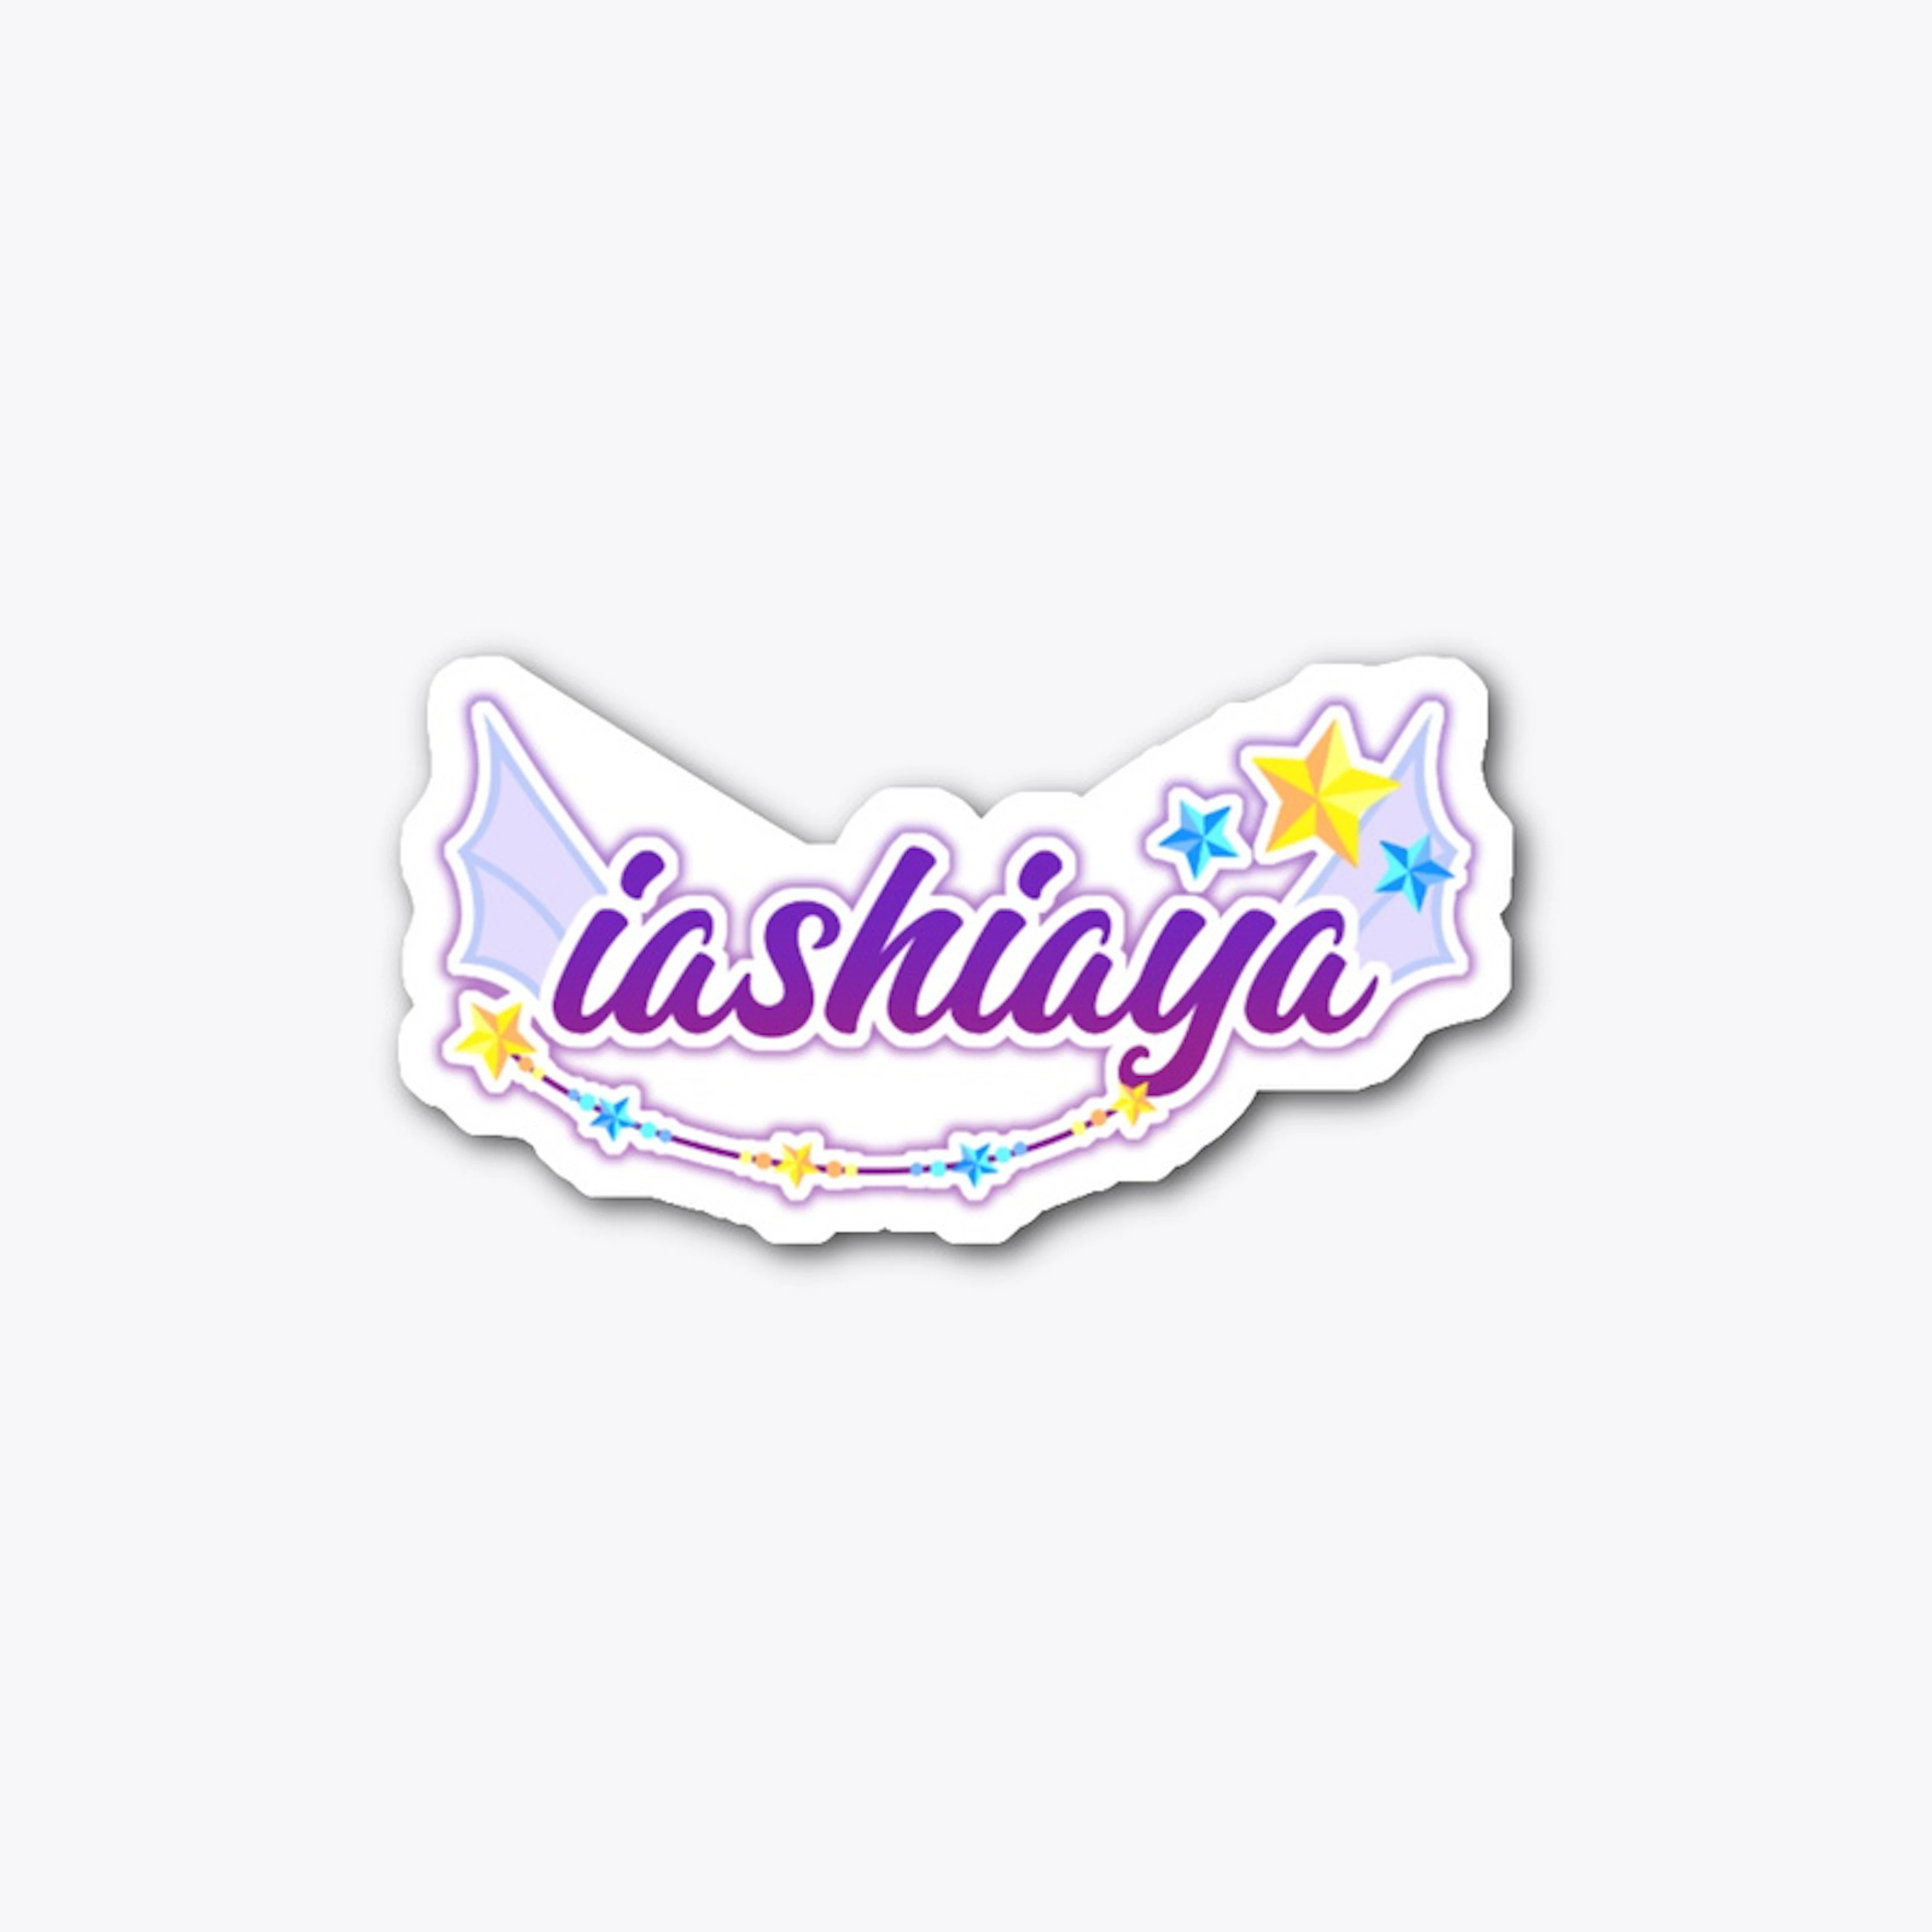 Iashiaya logo! 